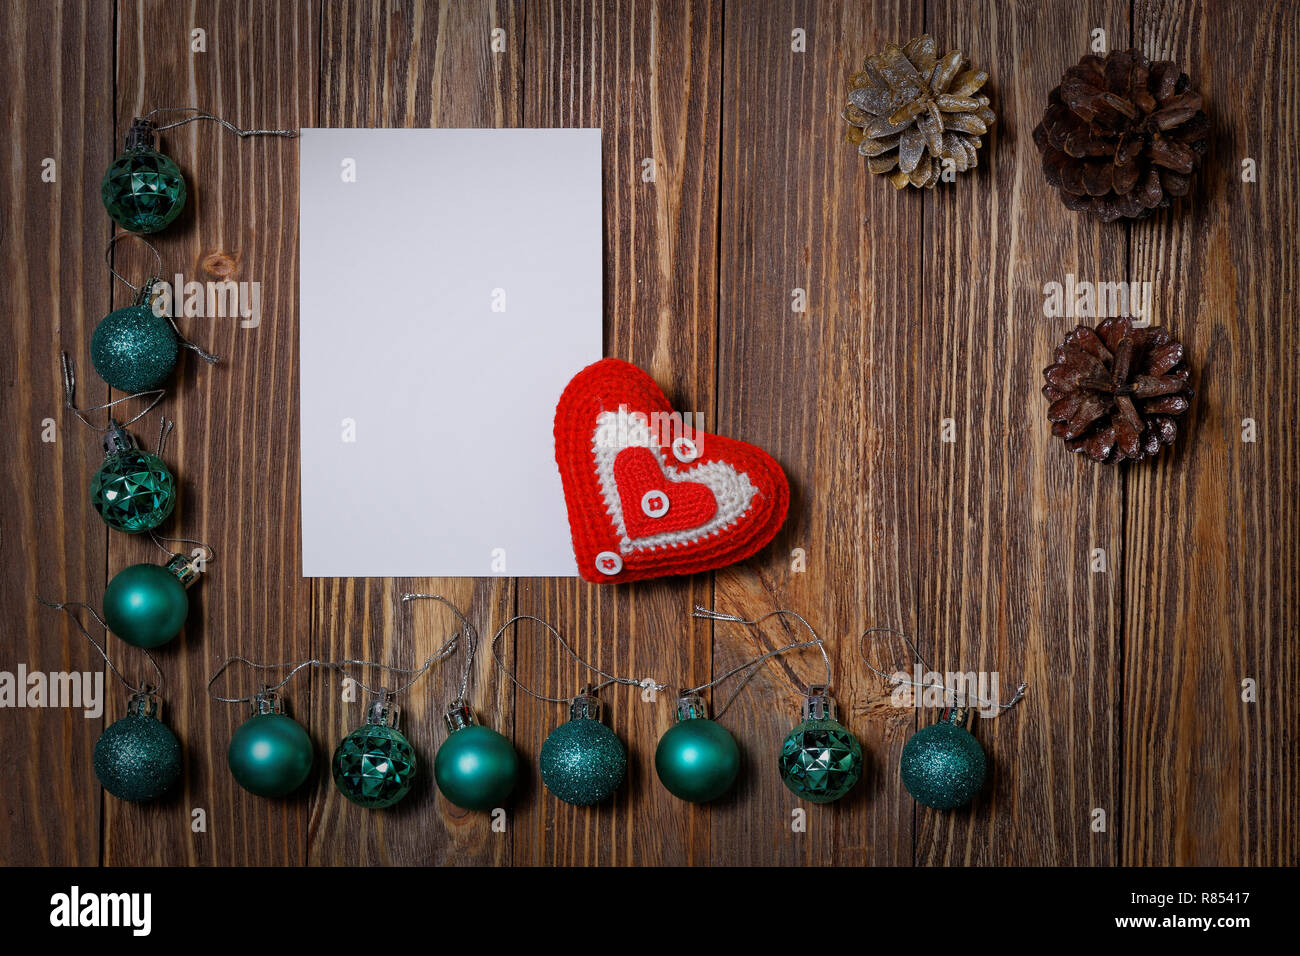 Décorations de noël ornement - des boules de Noël, pomme et coeur sur fond de bois. Copyspace. Banque D'Images